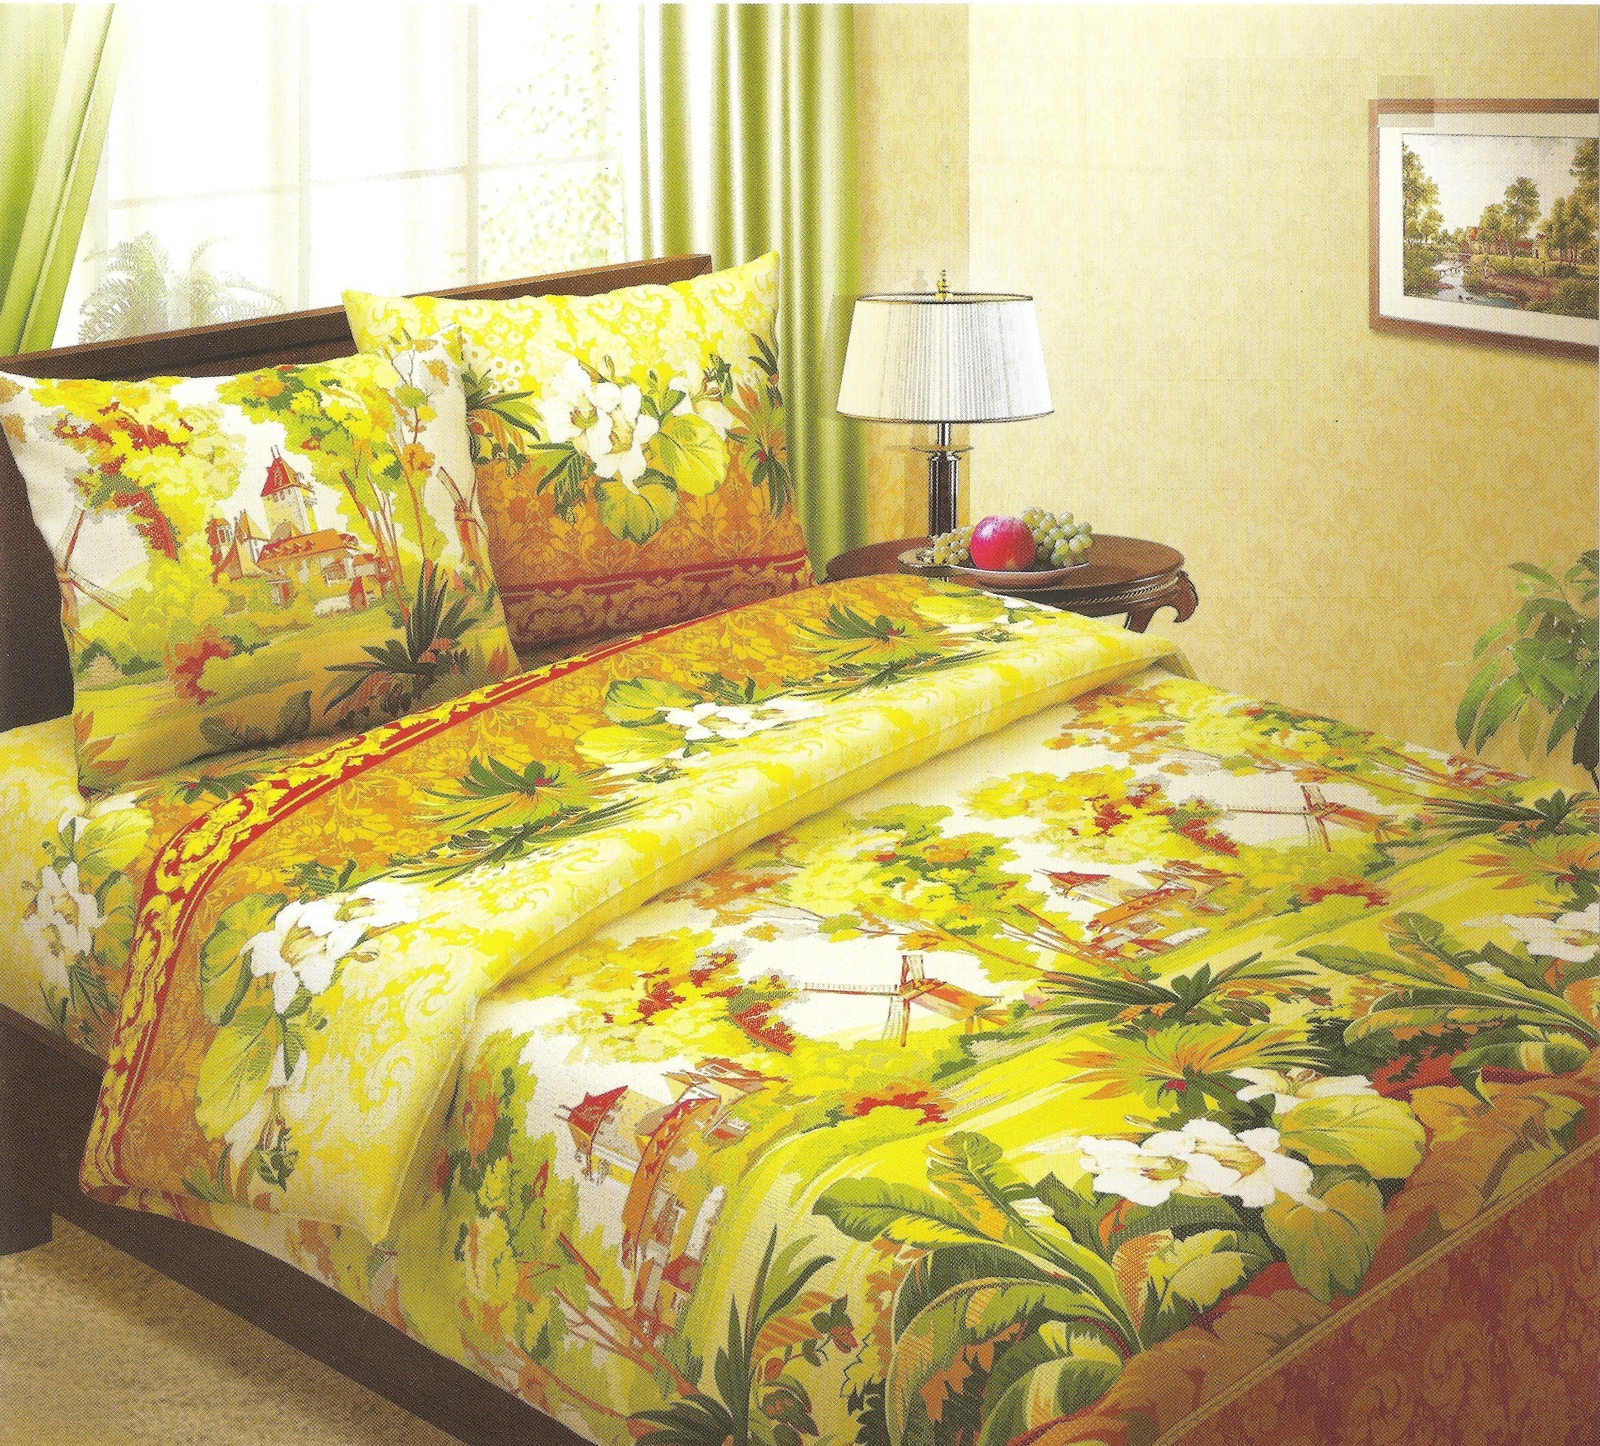 фото Комплект постельного белья BegAl бязь, БК001-516-1, коричневый, желтый, зеленый